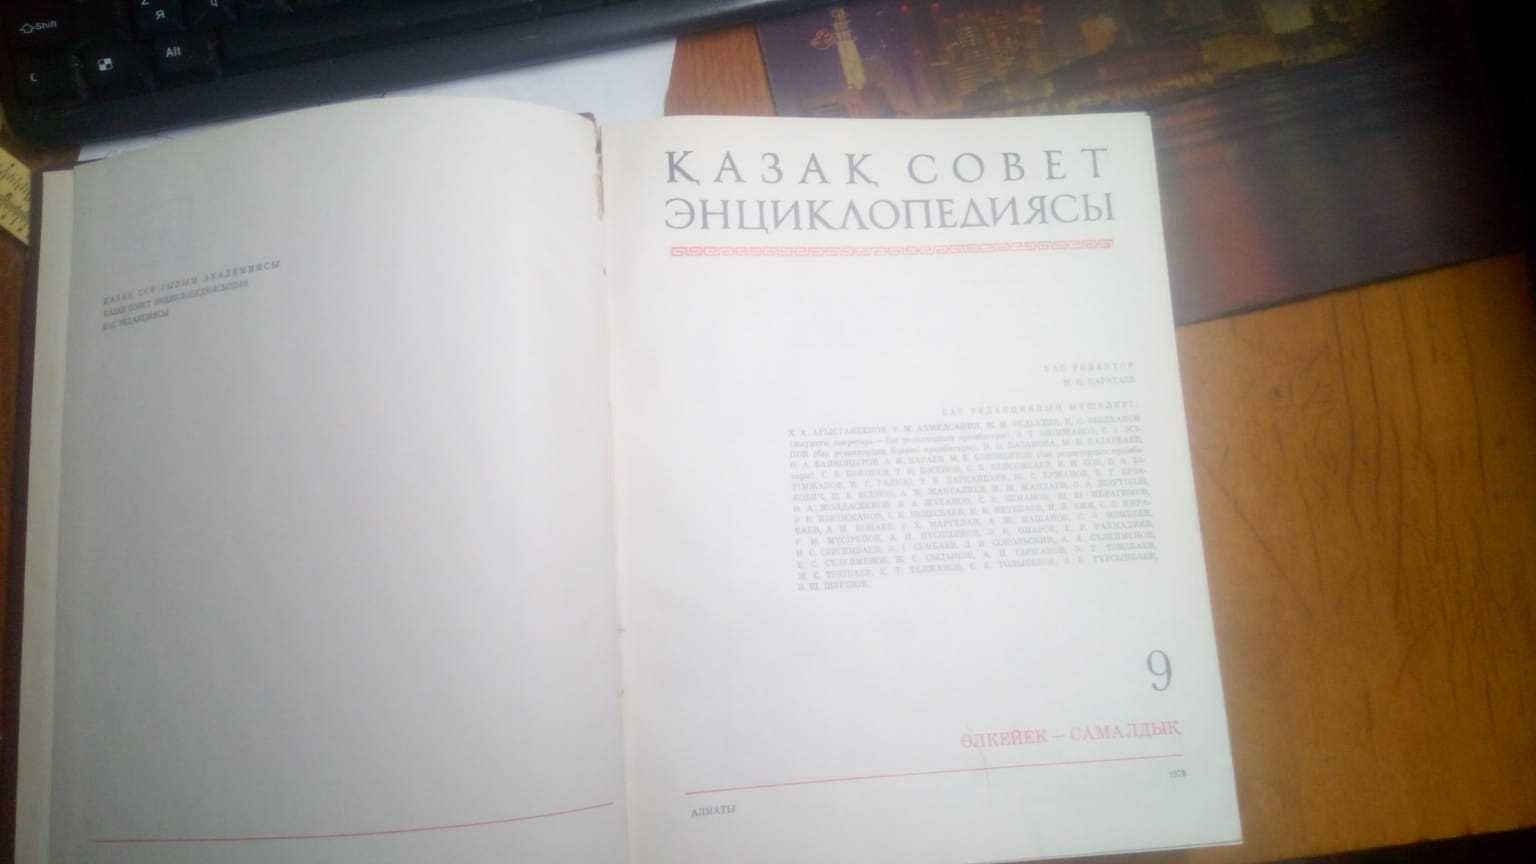 Казахская советская энциклопедия на казахском языке